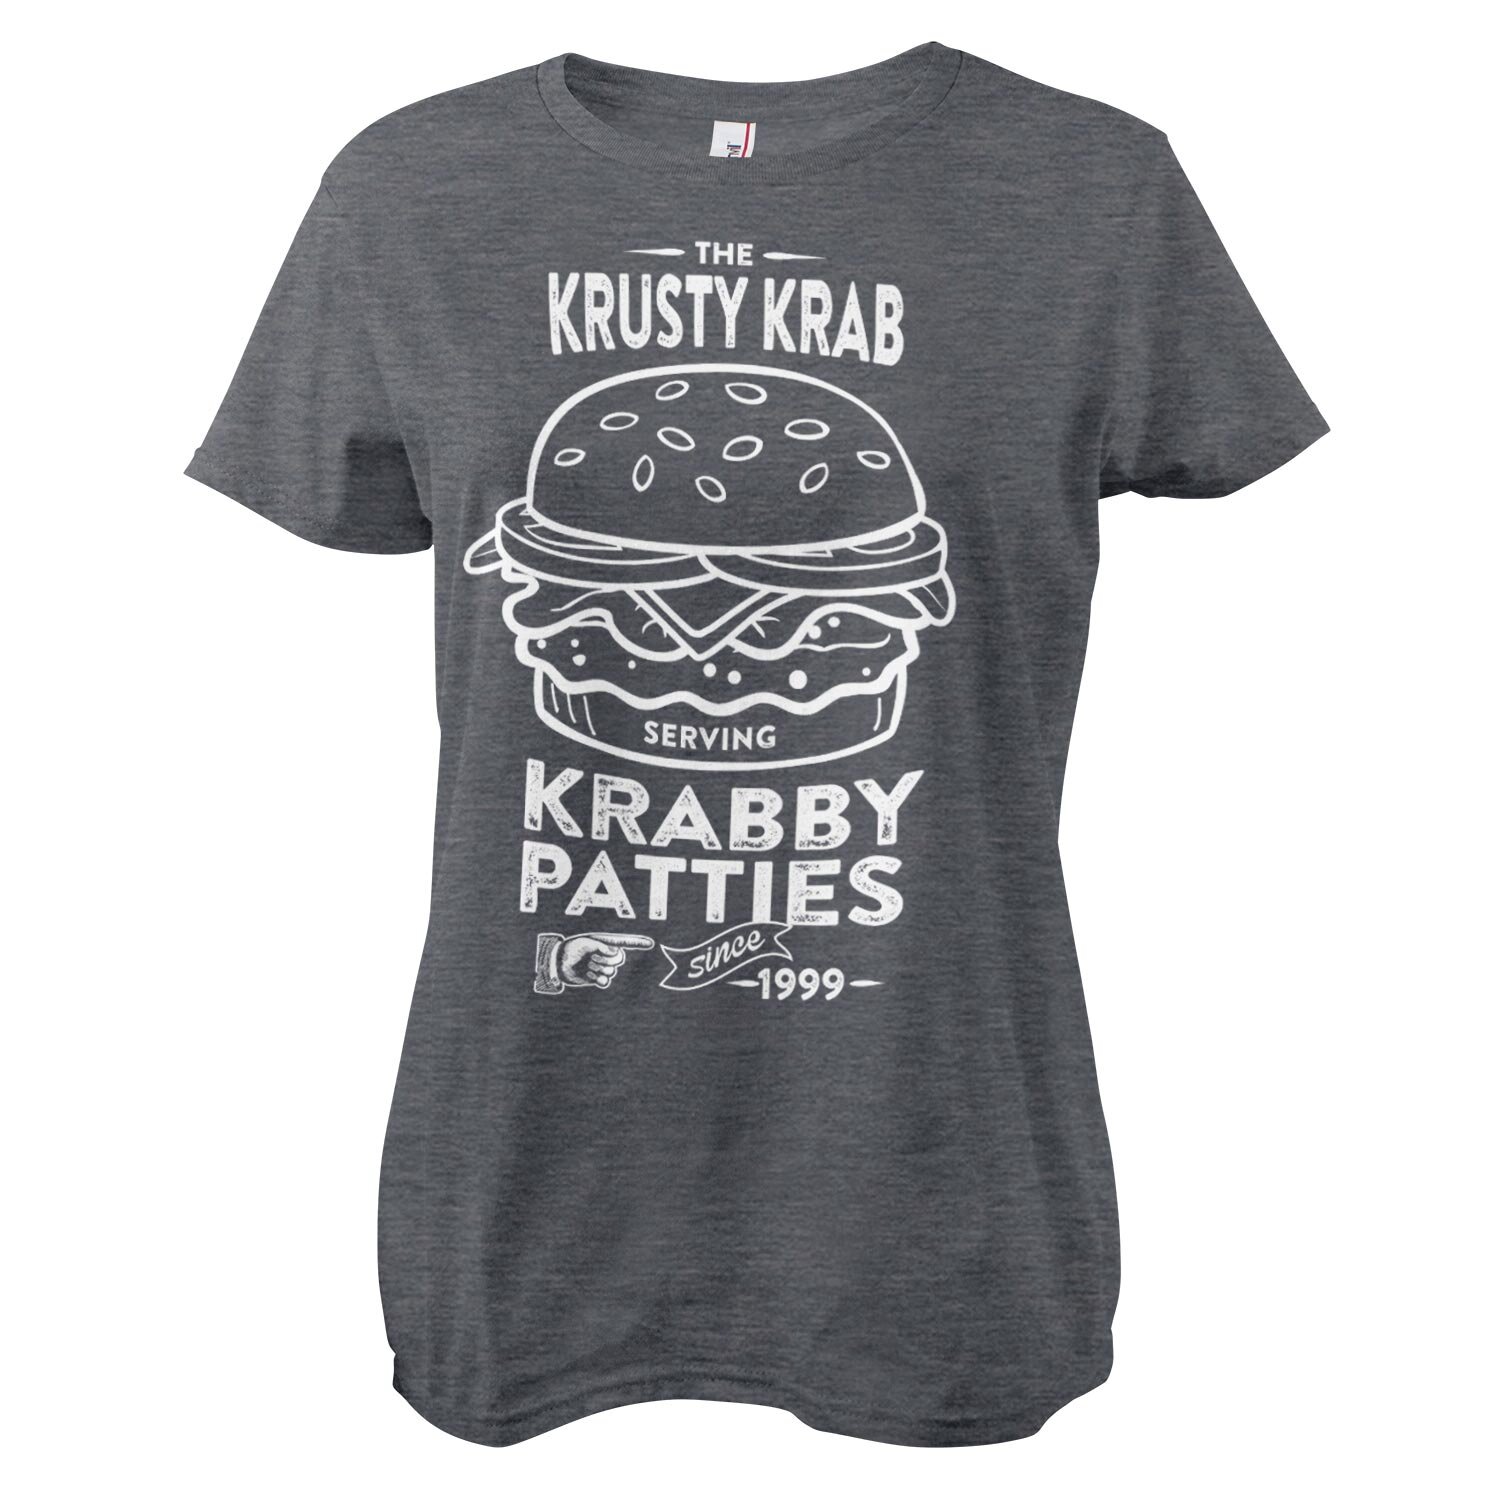 The Krusty Krab Serving Krabby Patties Girly Tee